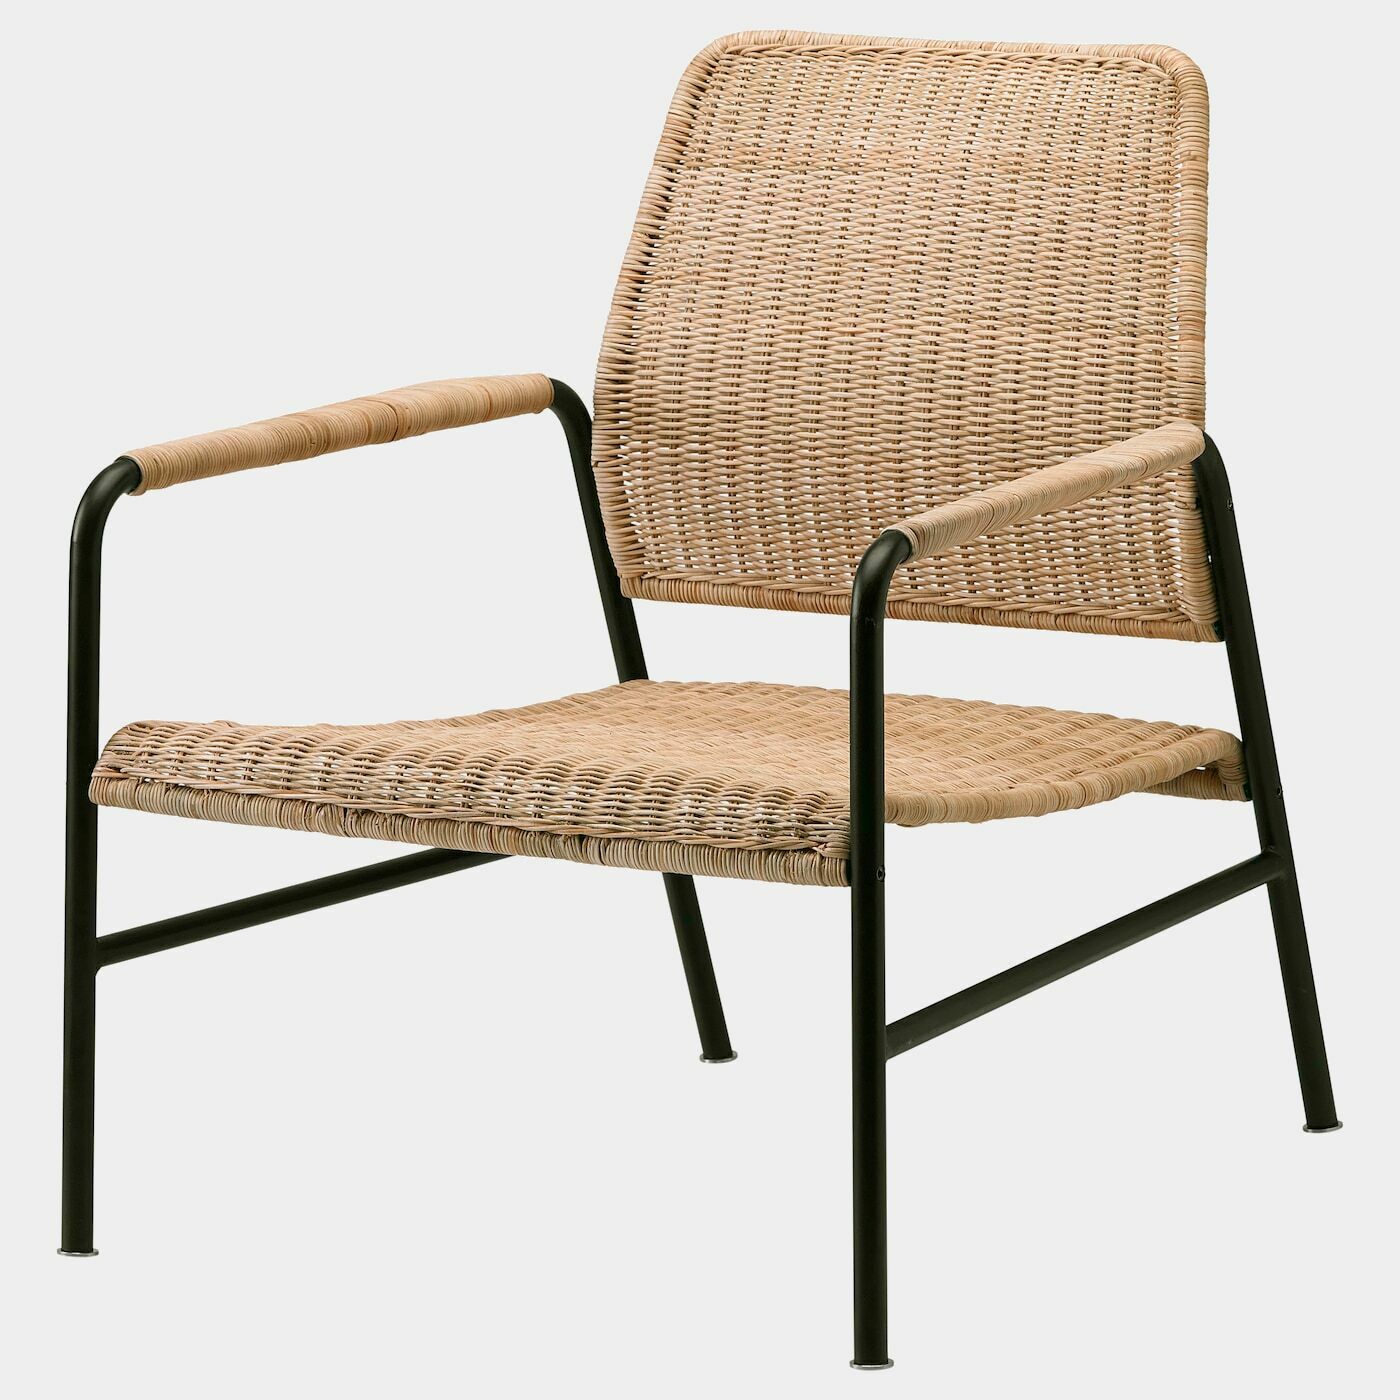 ULRIKSBERG Sessel  - Sessel & Récamieren - Möbel Ideen für dein Zuhause von Home Trends. Möbel Trends von Social Media Influencer für dein Skandi Zuhause.